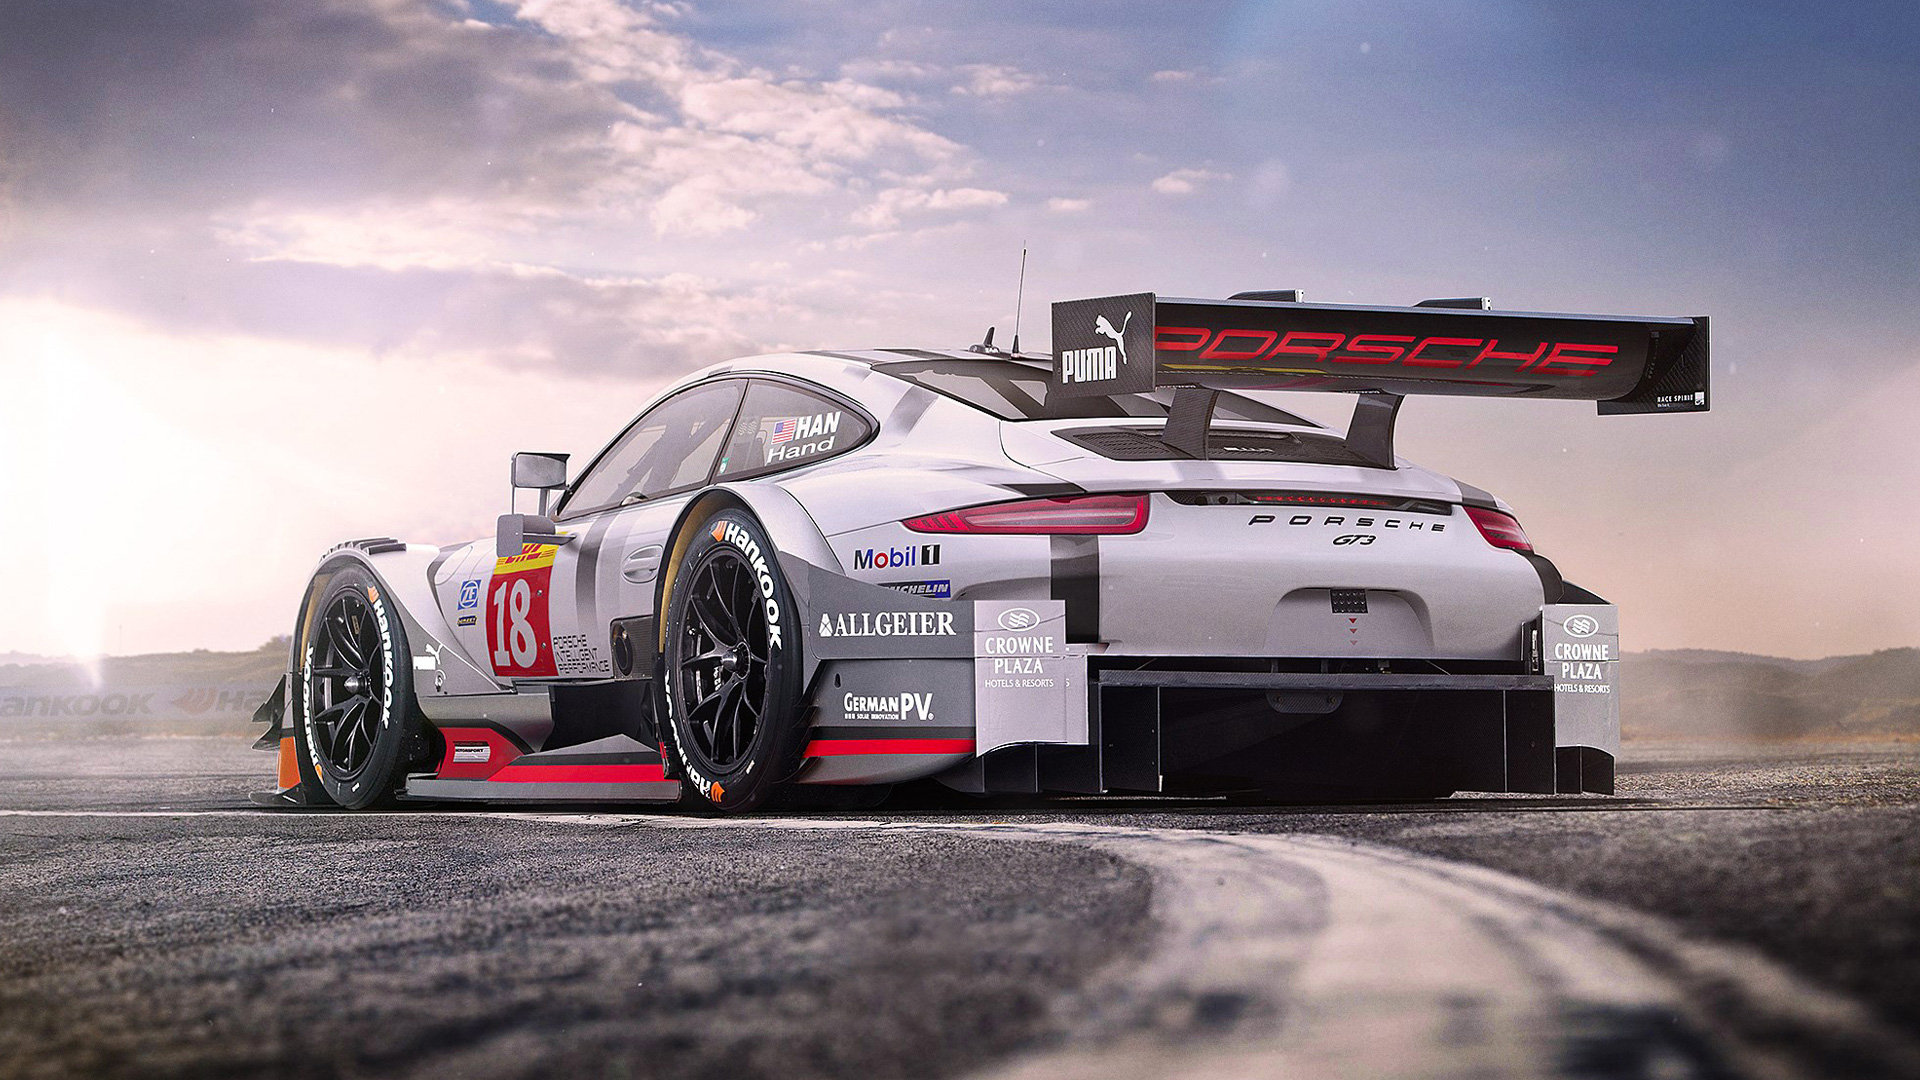 Porsche 911 GT3 Race Car Wallpaper | HD Car Wallpapers ...